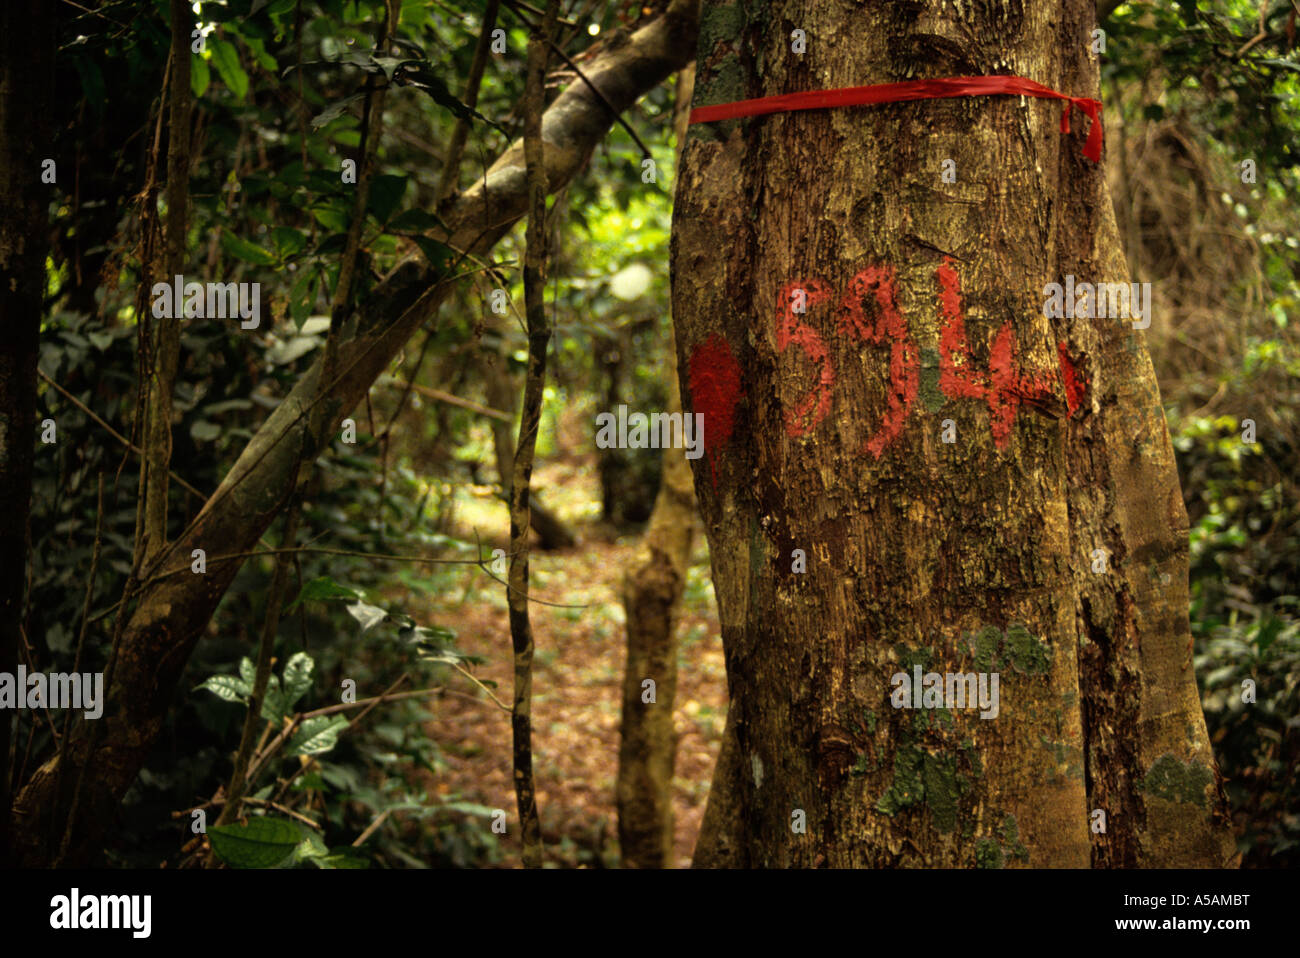 Bossematie foresta nazionale, centrale Costa d'Avorio, Costa d'Avorio. Striscia di inventario che mostra i contrassegni che identificano il legno Foto Stock